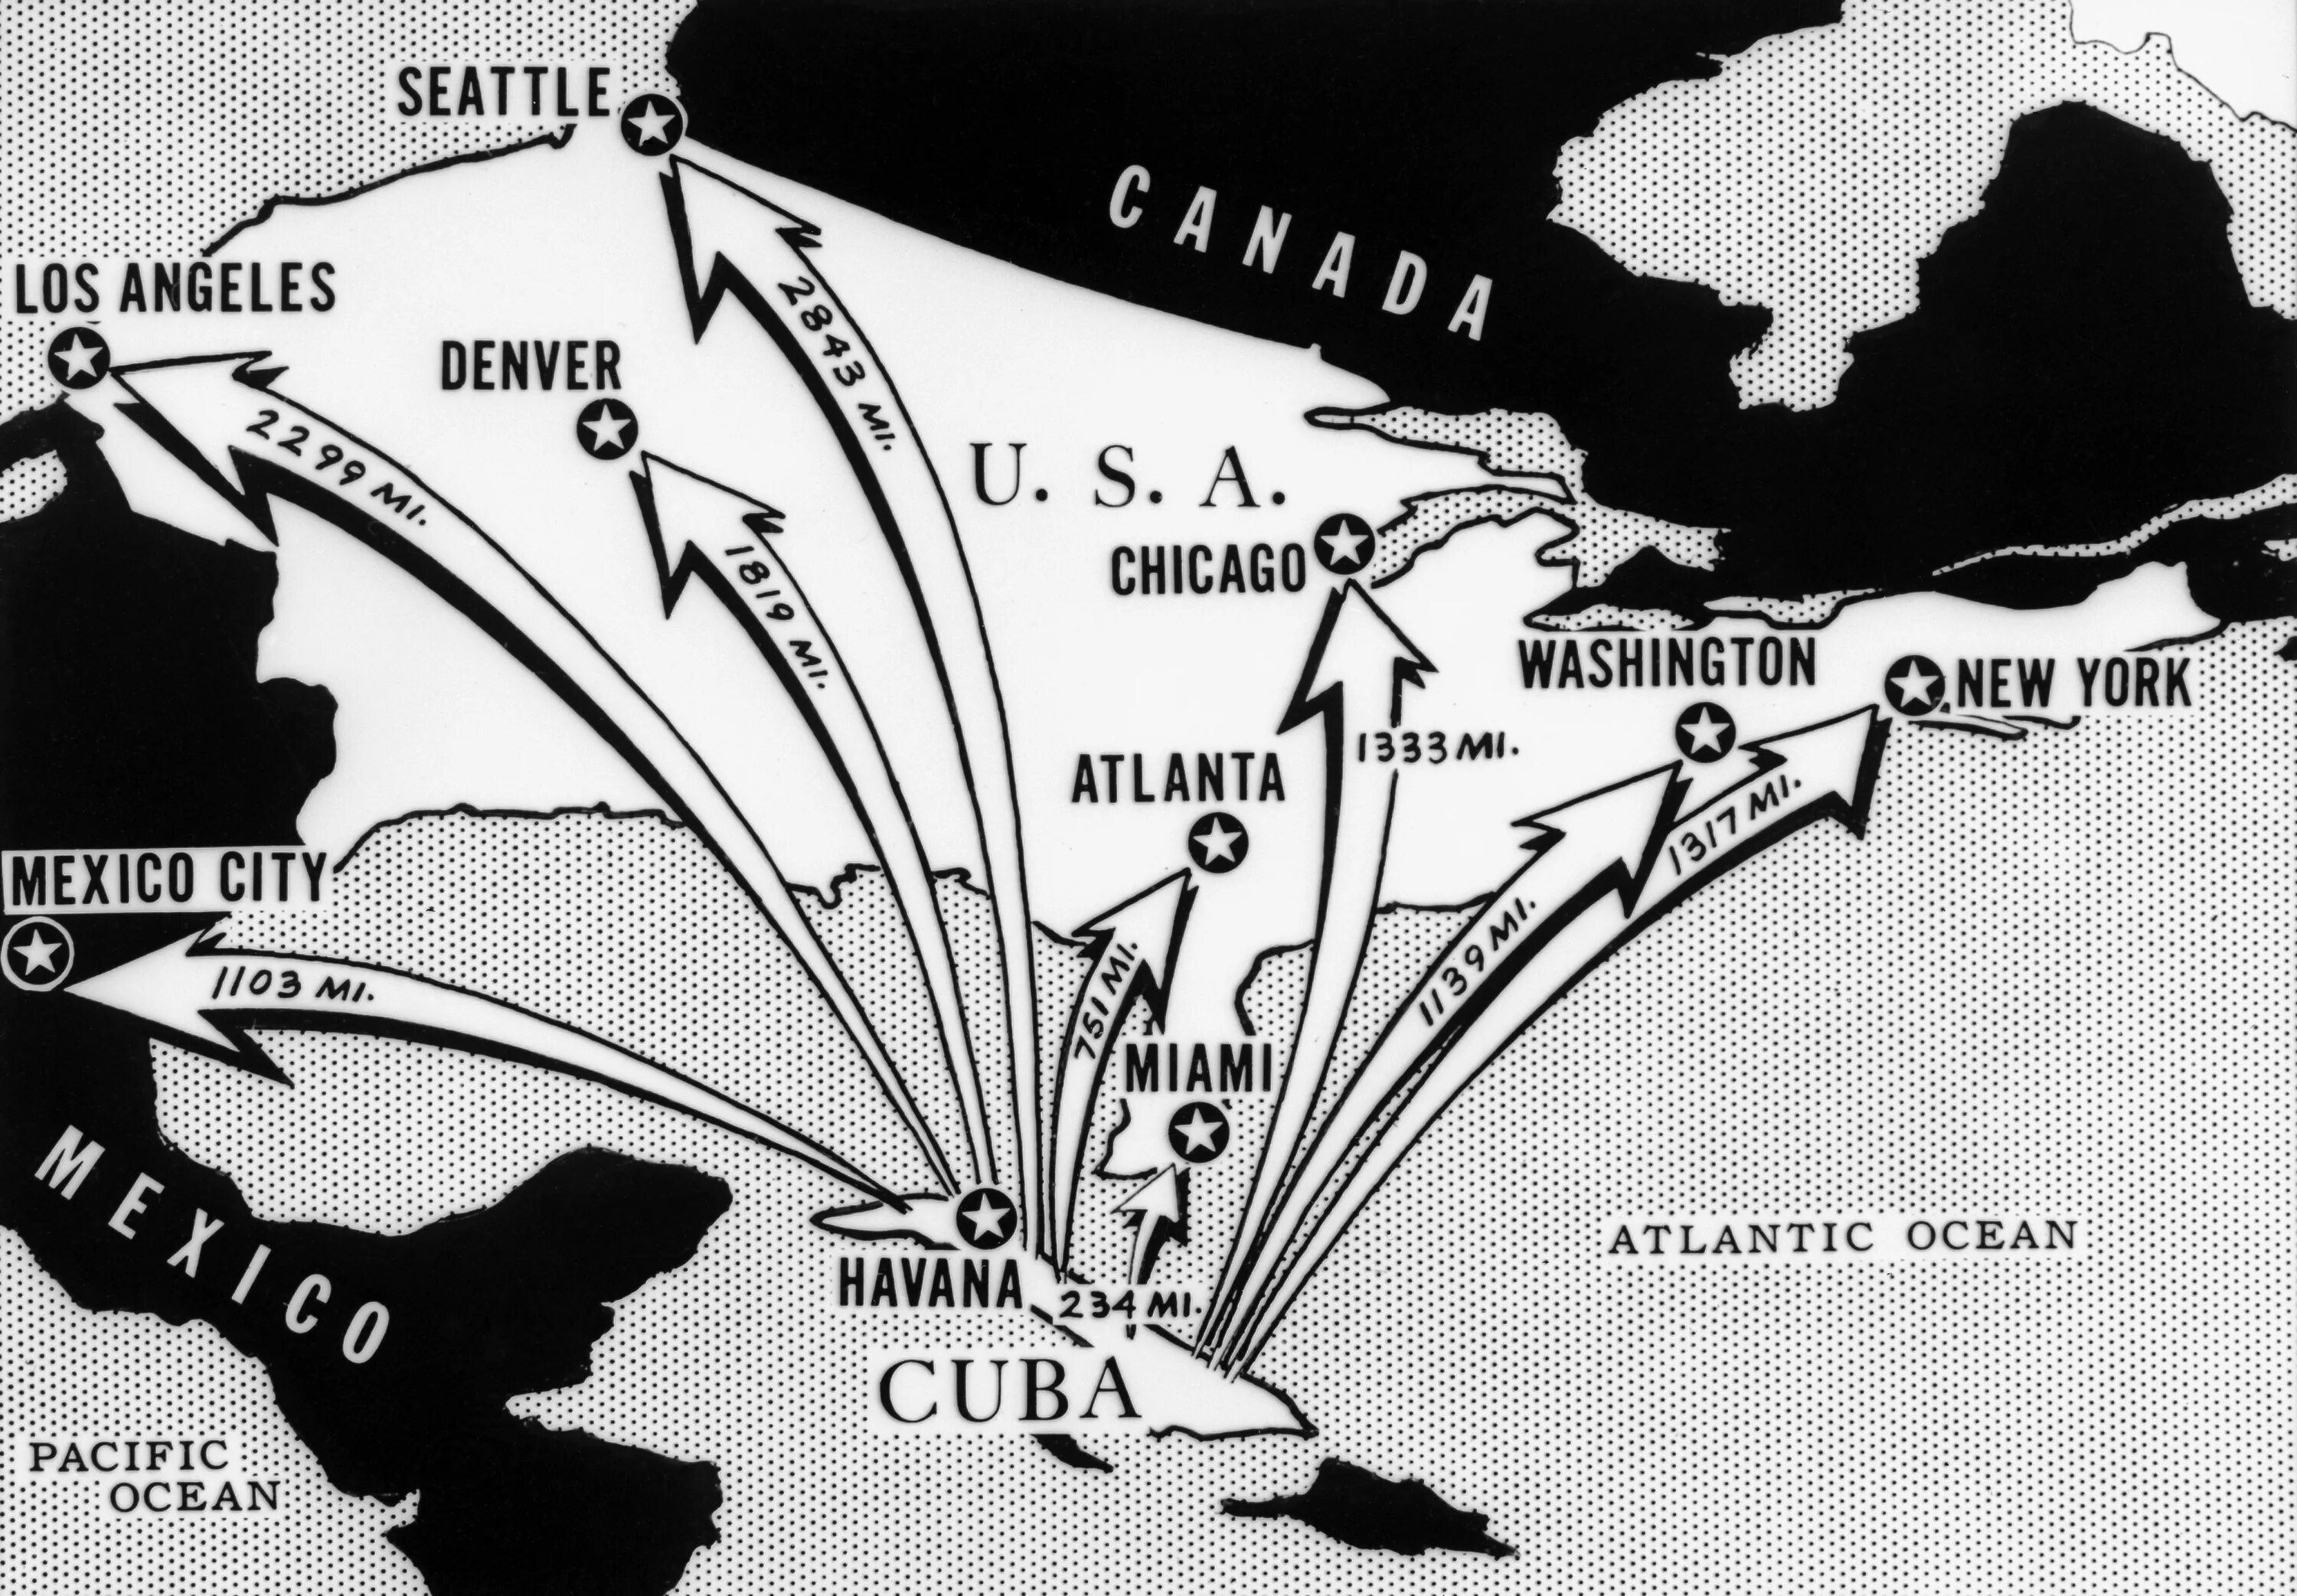 Внешнеполитический кризис. Куба 1962 Карибский кризис. Ракеты на Кубе 1962 год. Ядерные ракеты на Кубе 1962 год. Карибский кризис 1962 года.